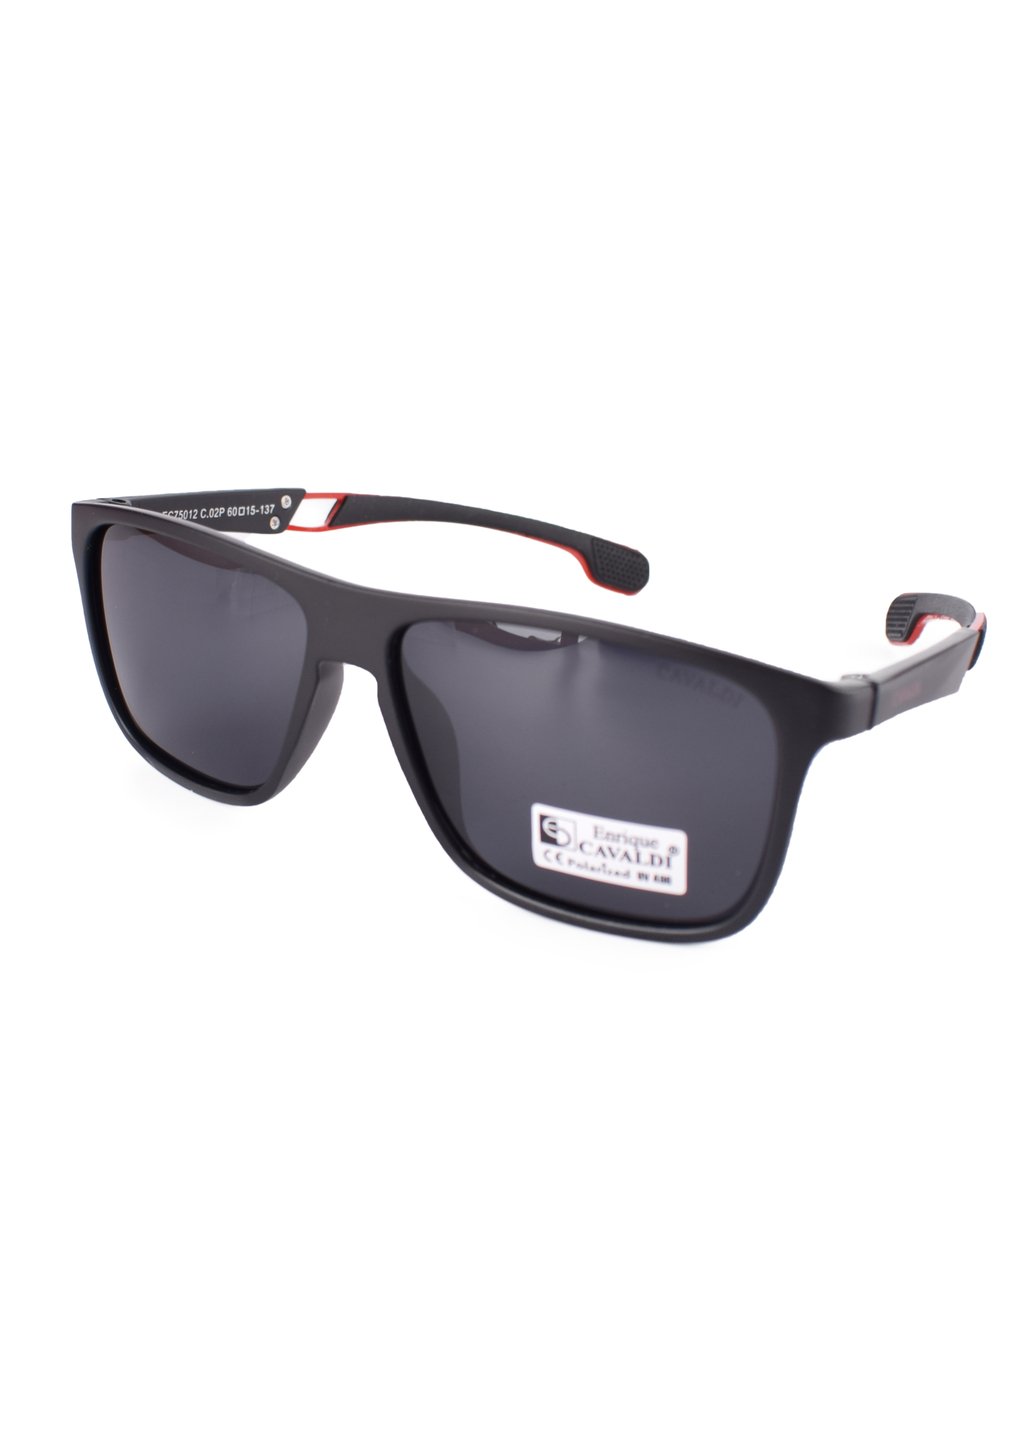 Купить Черные мужские солнцезащитные очки Enrique Cavaldi ЕС75012 150011 в интернет-магазине